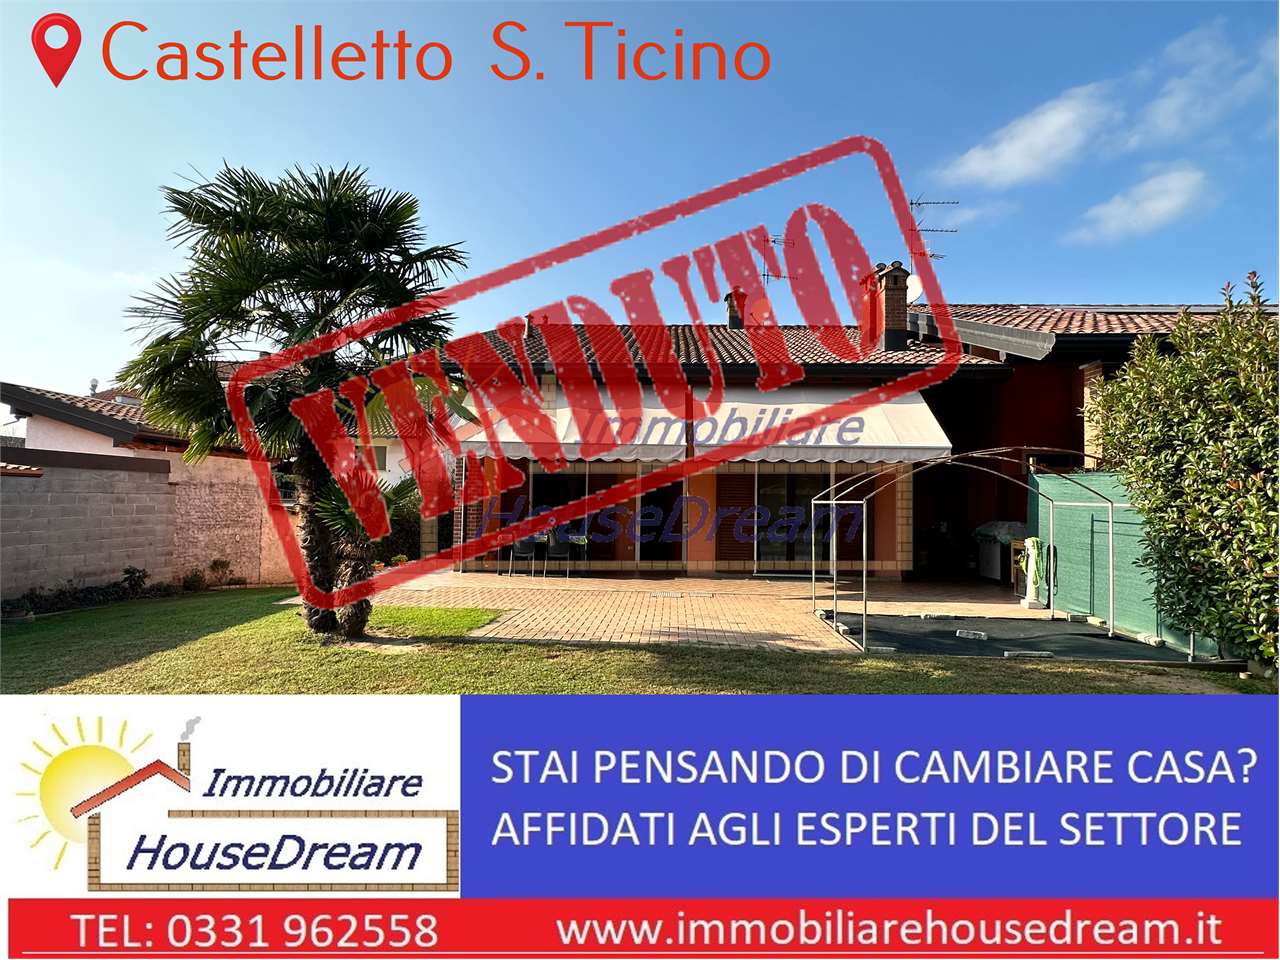 Villa unifamiliare in vendita, Castelletto sopra Ticino